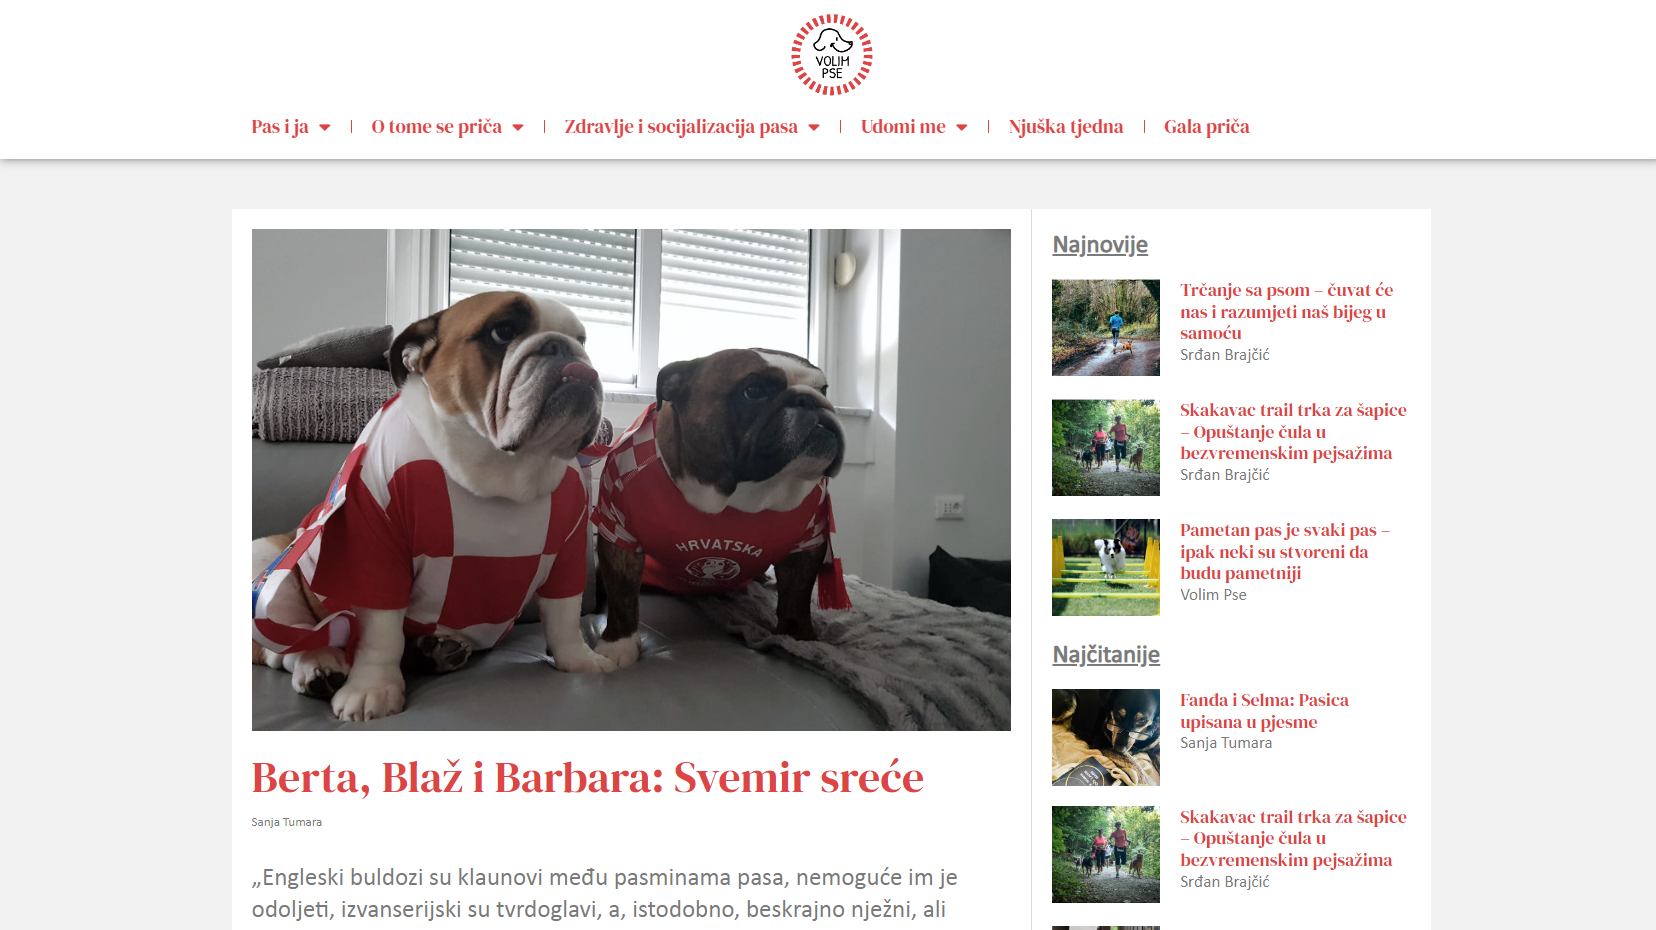 Naslovnica portala Volim pse / Screenshot